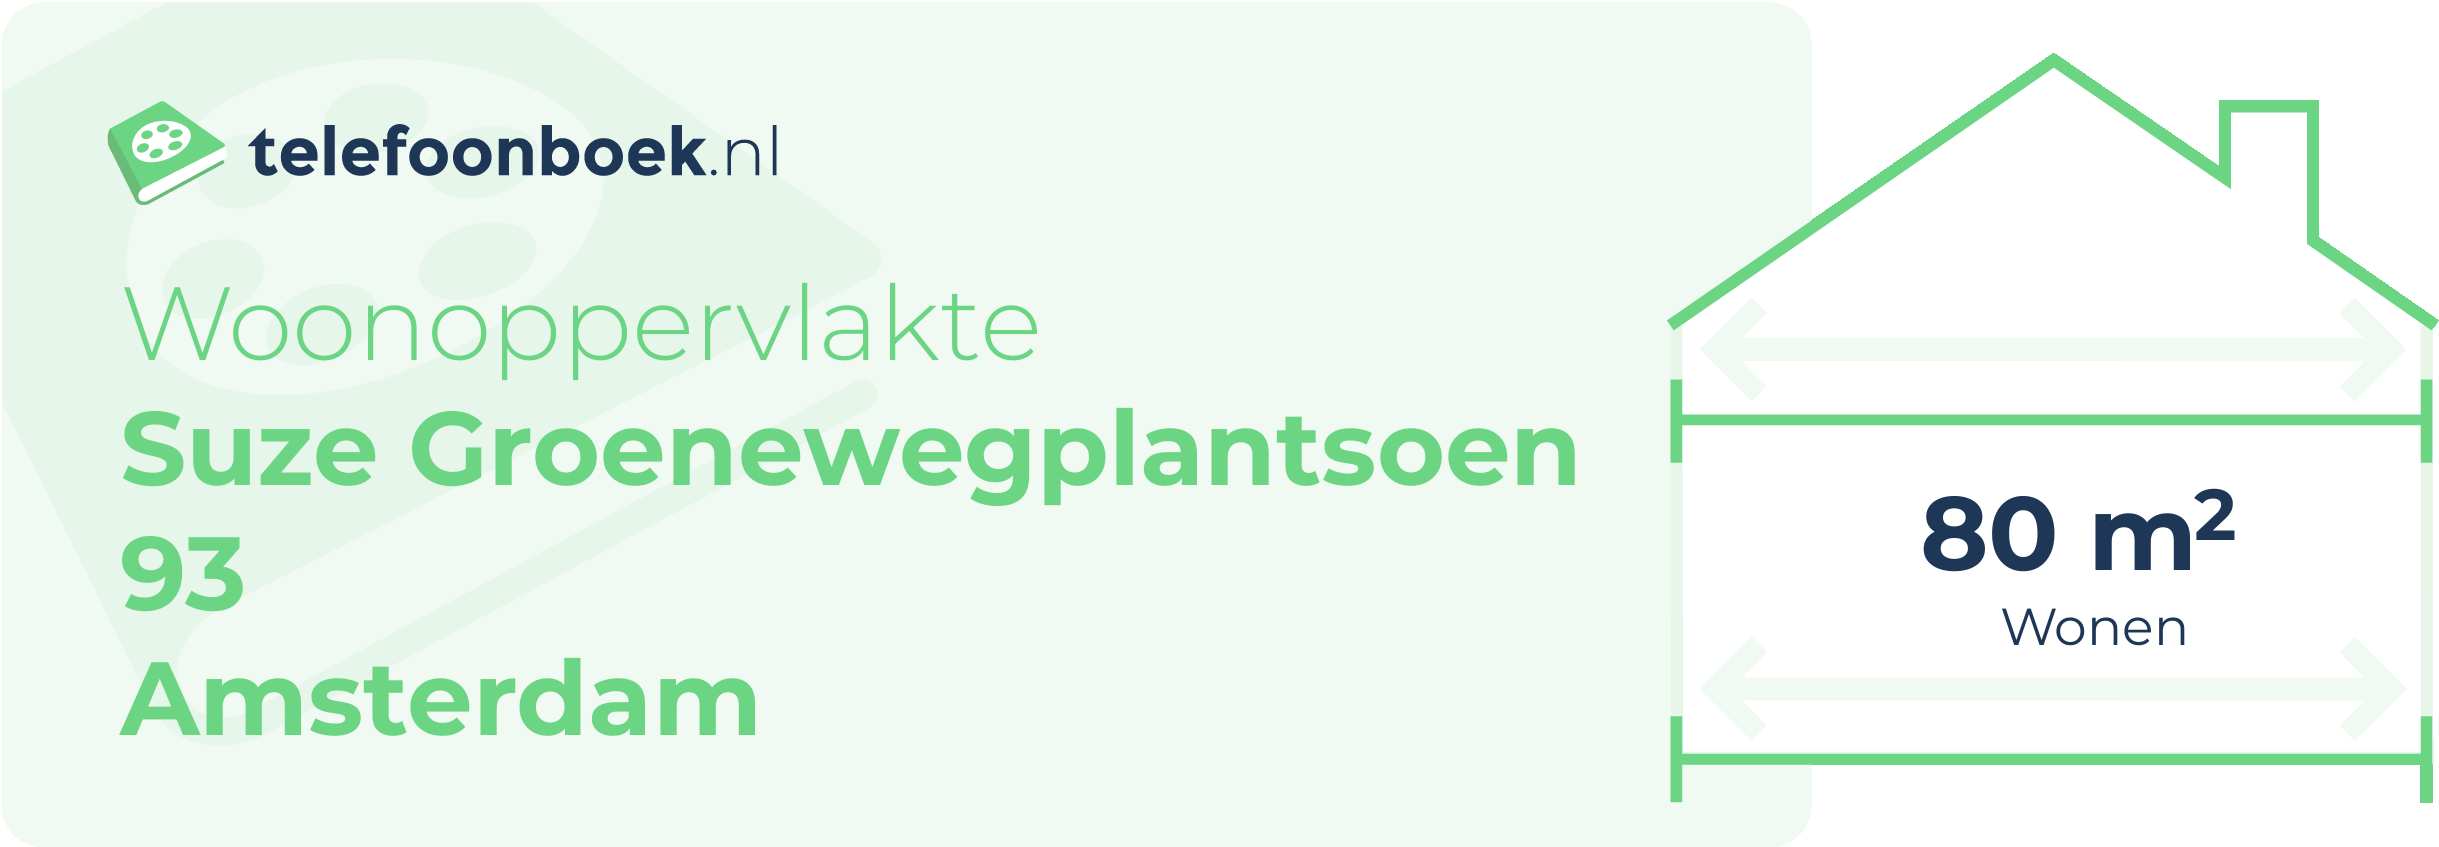 Woonoppervlakte Suze Groenewegplantsoen 93 Amsterdam